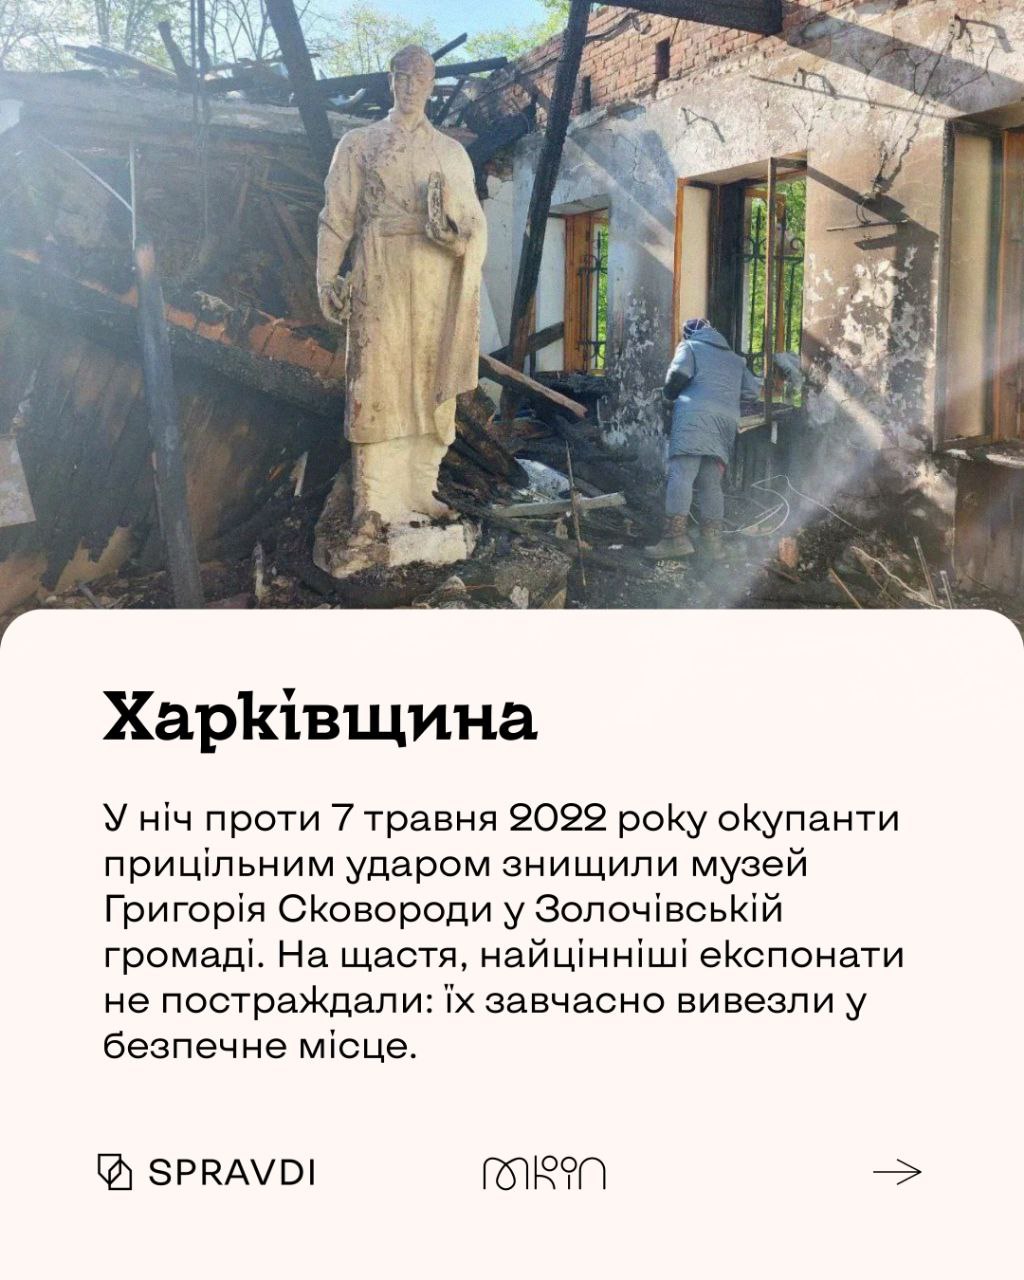 кремлівський культуроцид: географія знищеного українського надбання російською чумою